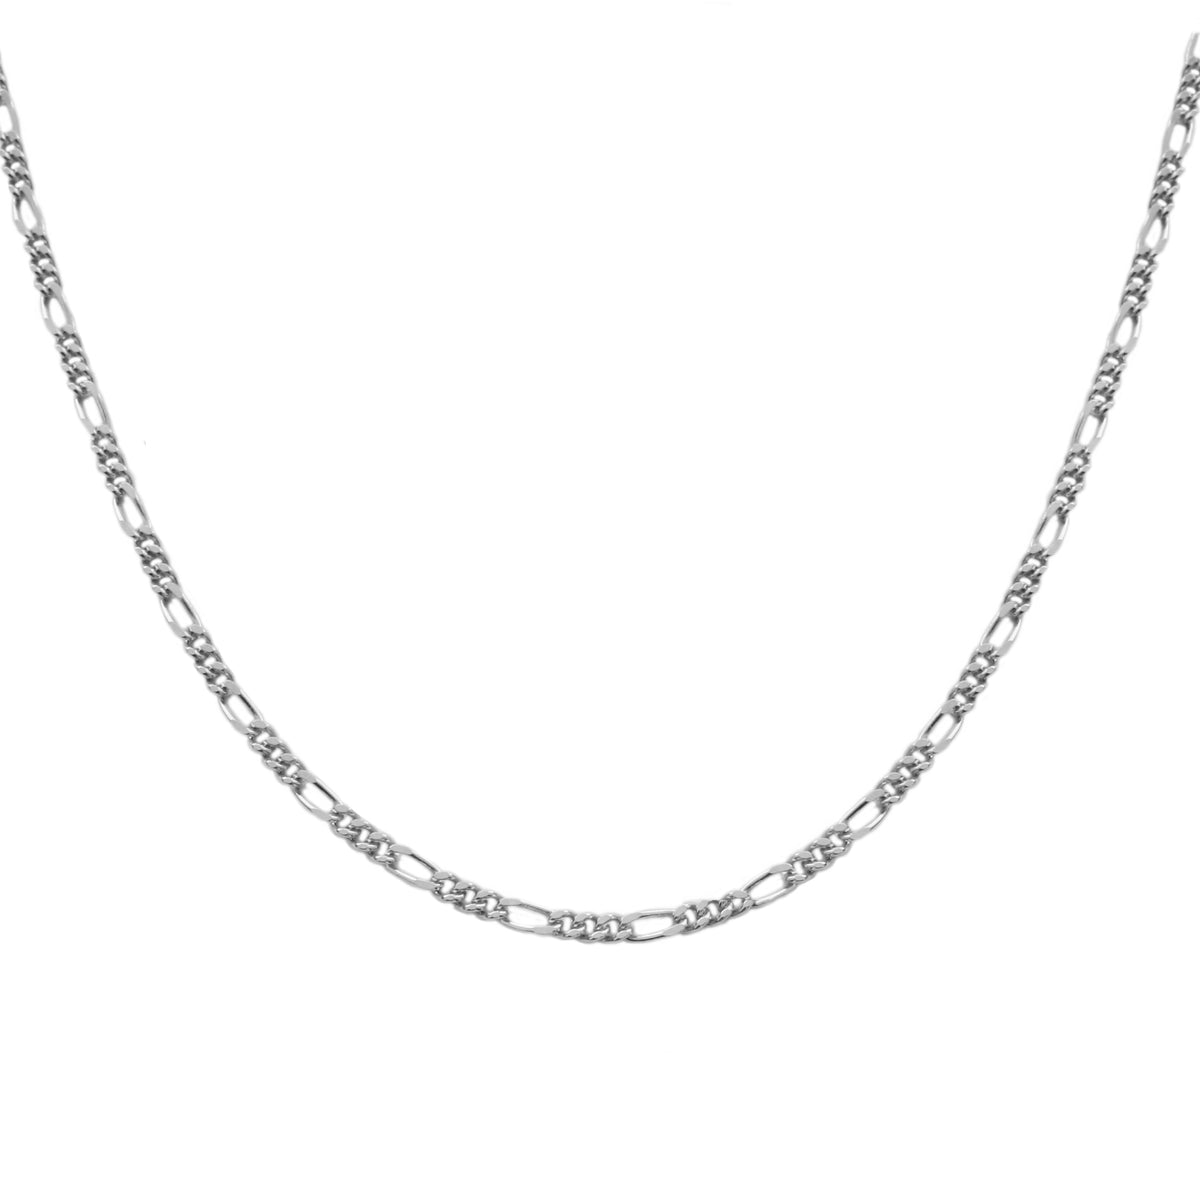 Chain silver - ByMirelae